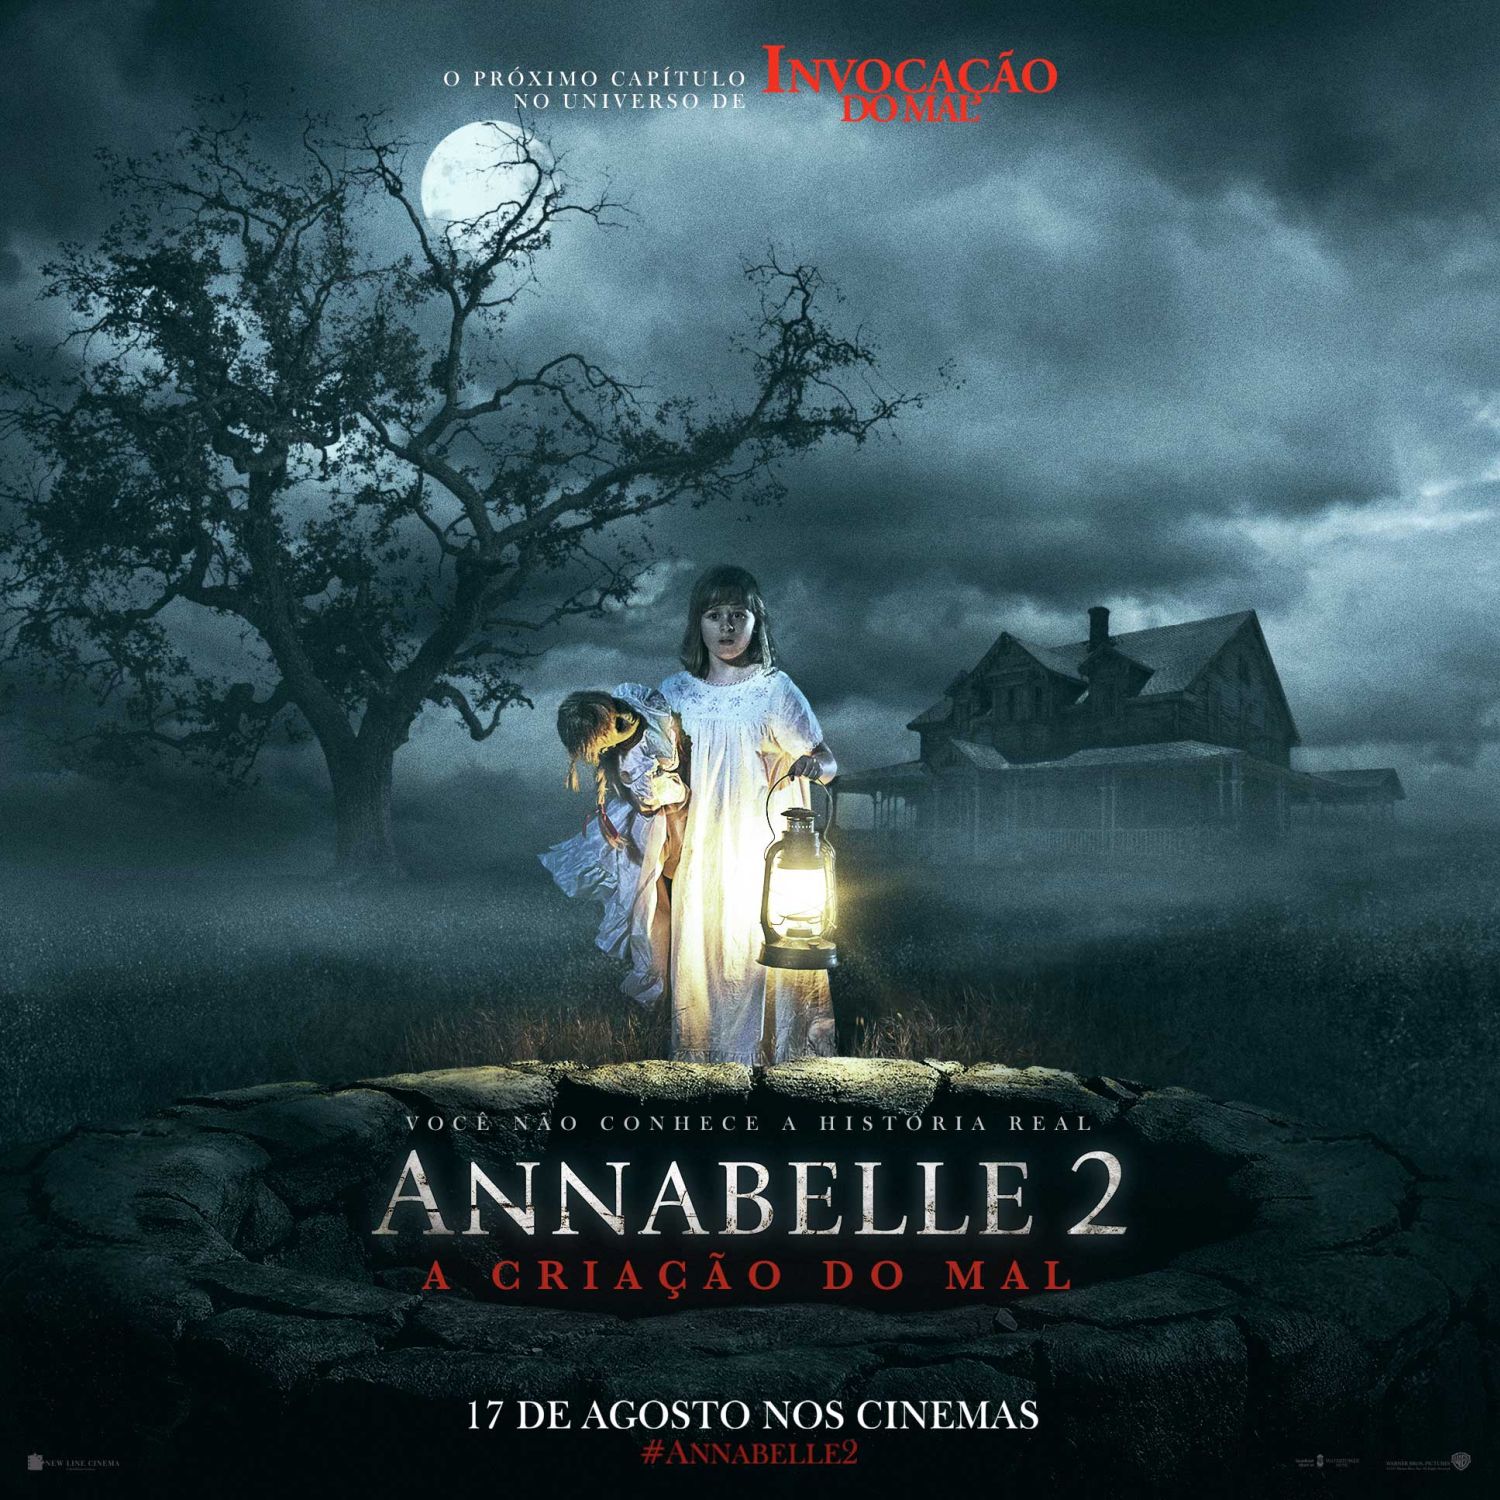 Annabelle 2 – A Criação do Mal tem estreia prevista para 17 de agosto